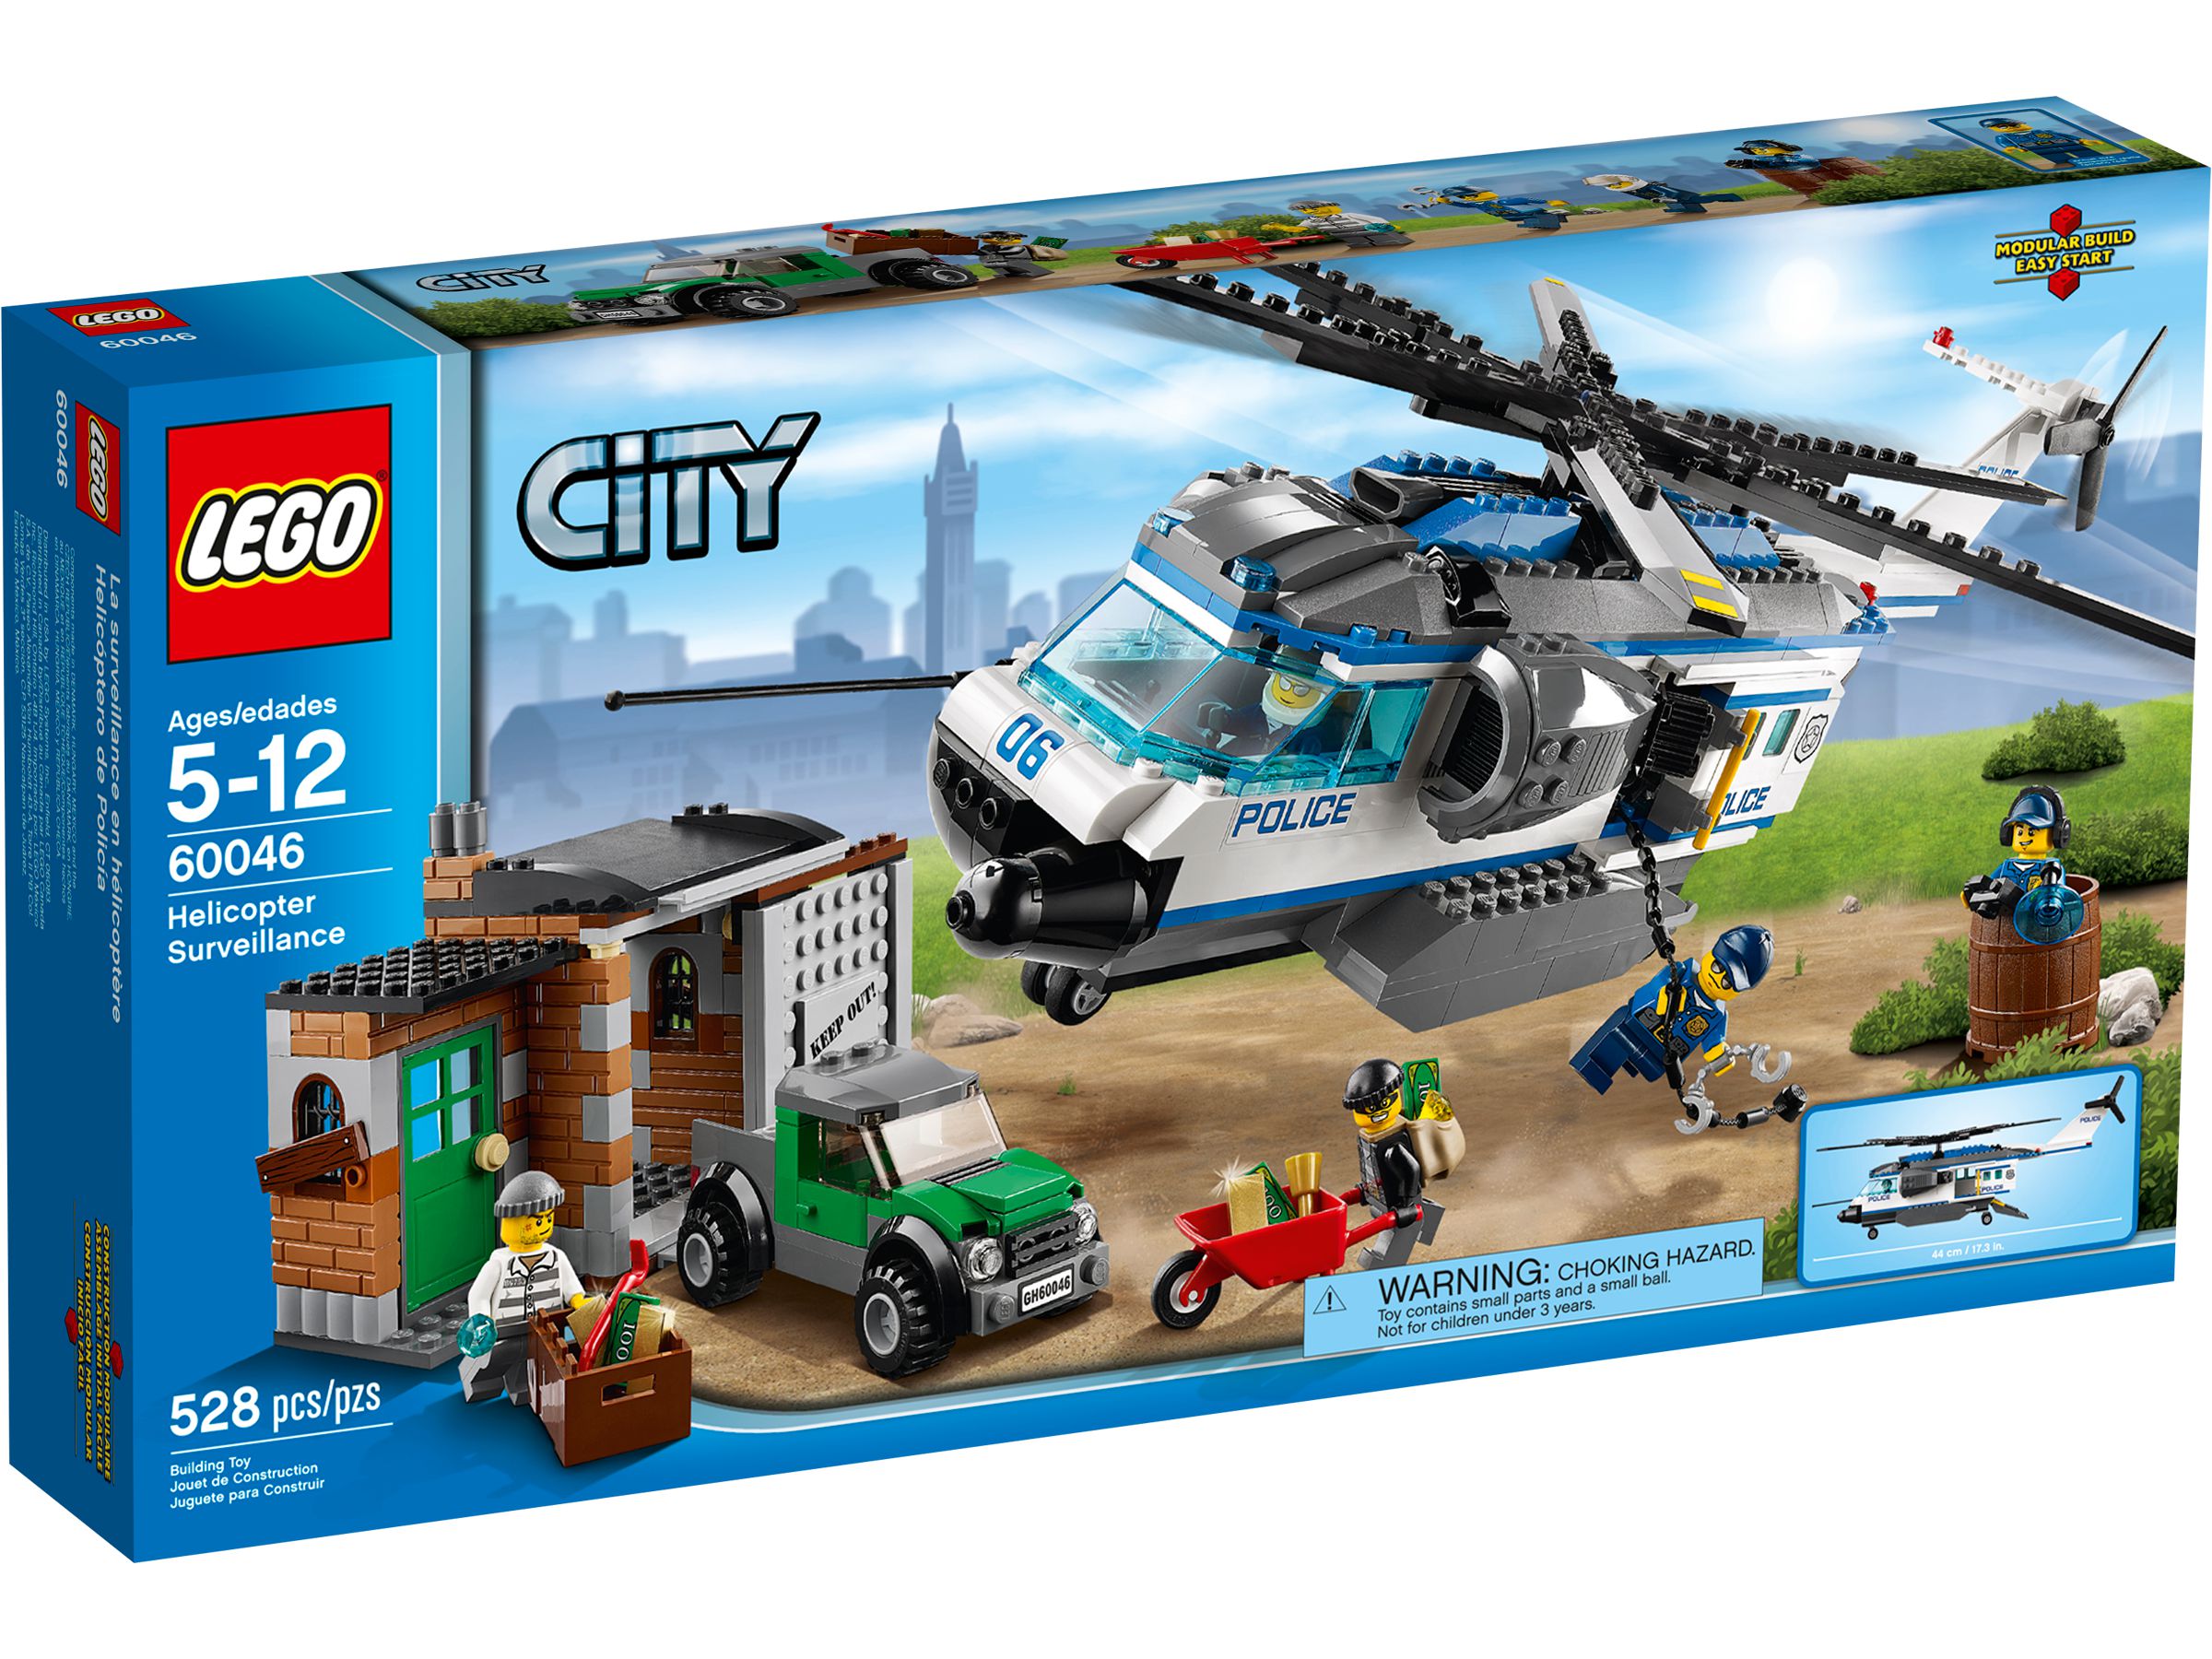 LEGO City 60046 Verfolgung mit dem Polizei-Hubschrauber LEGO_60046_alt1.jpg